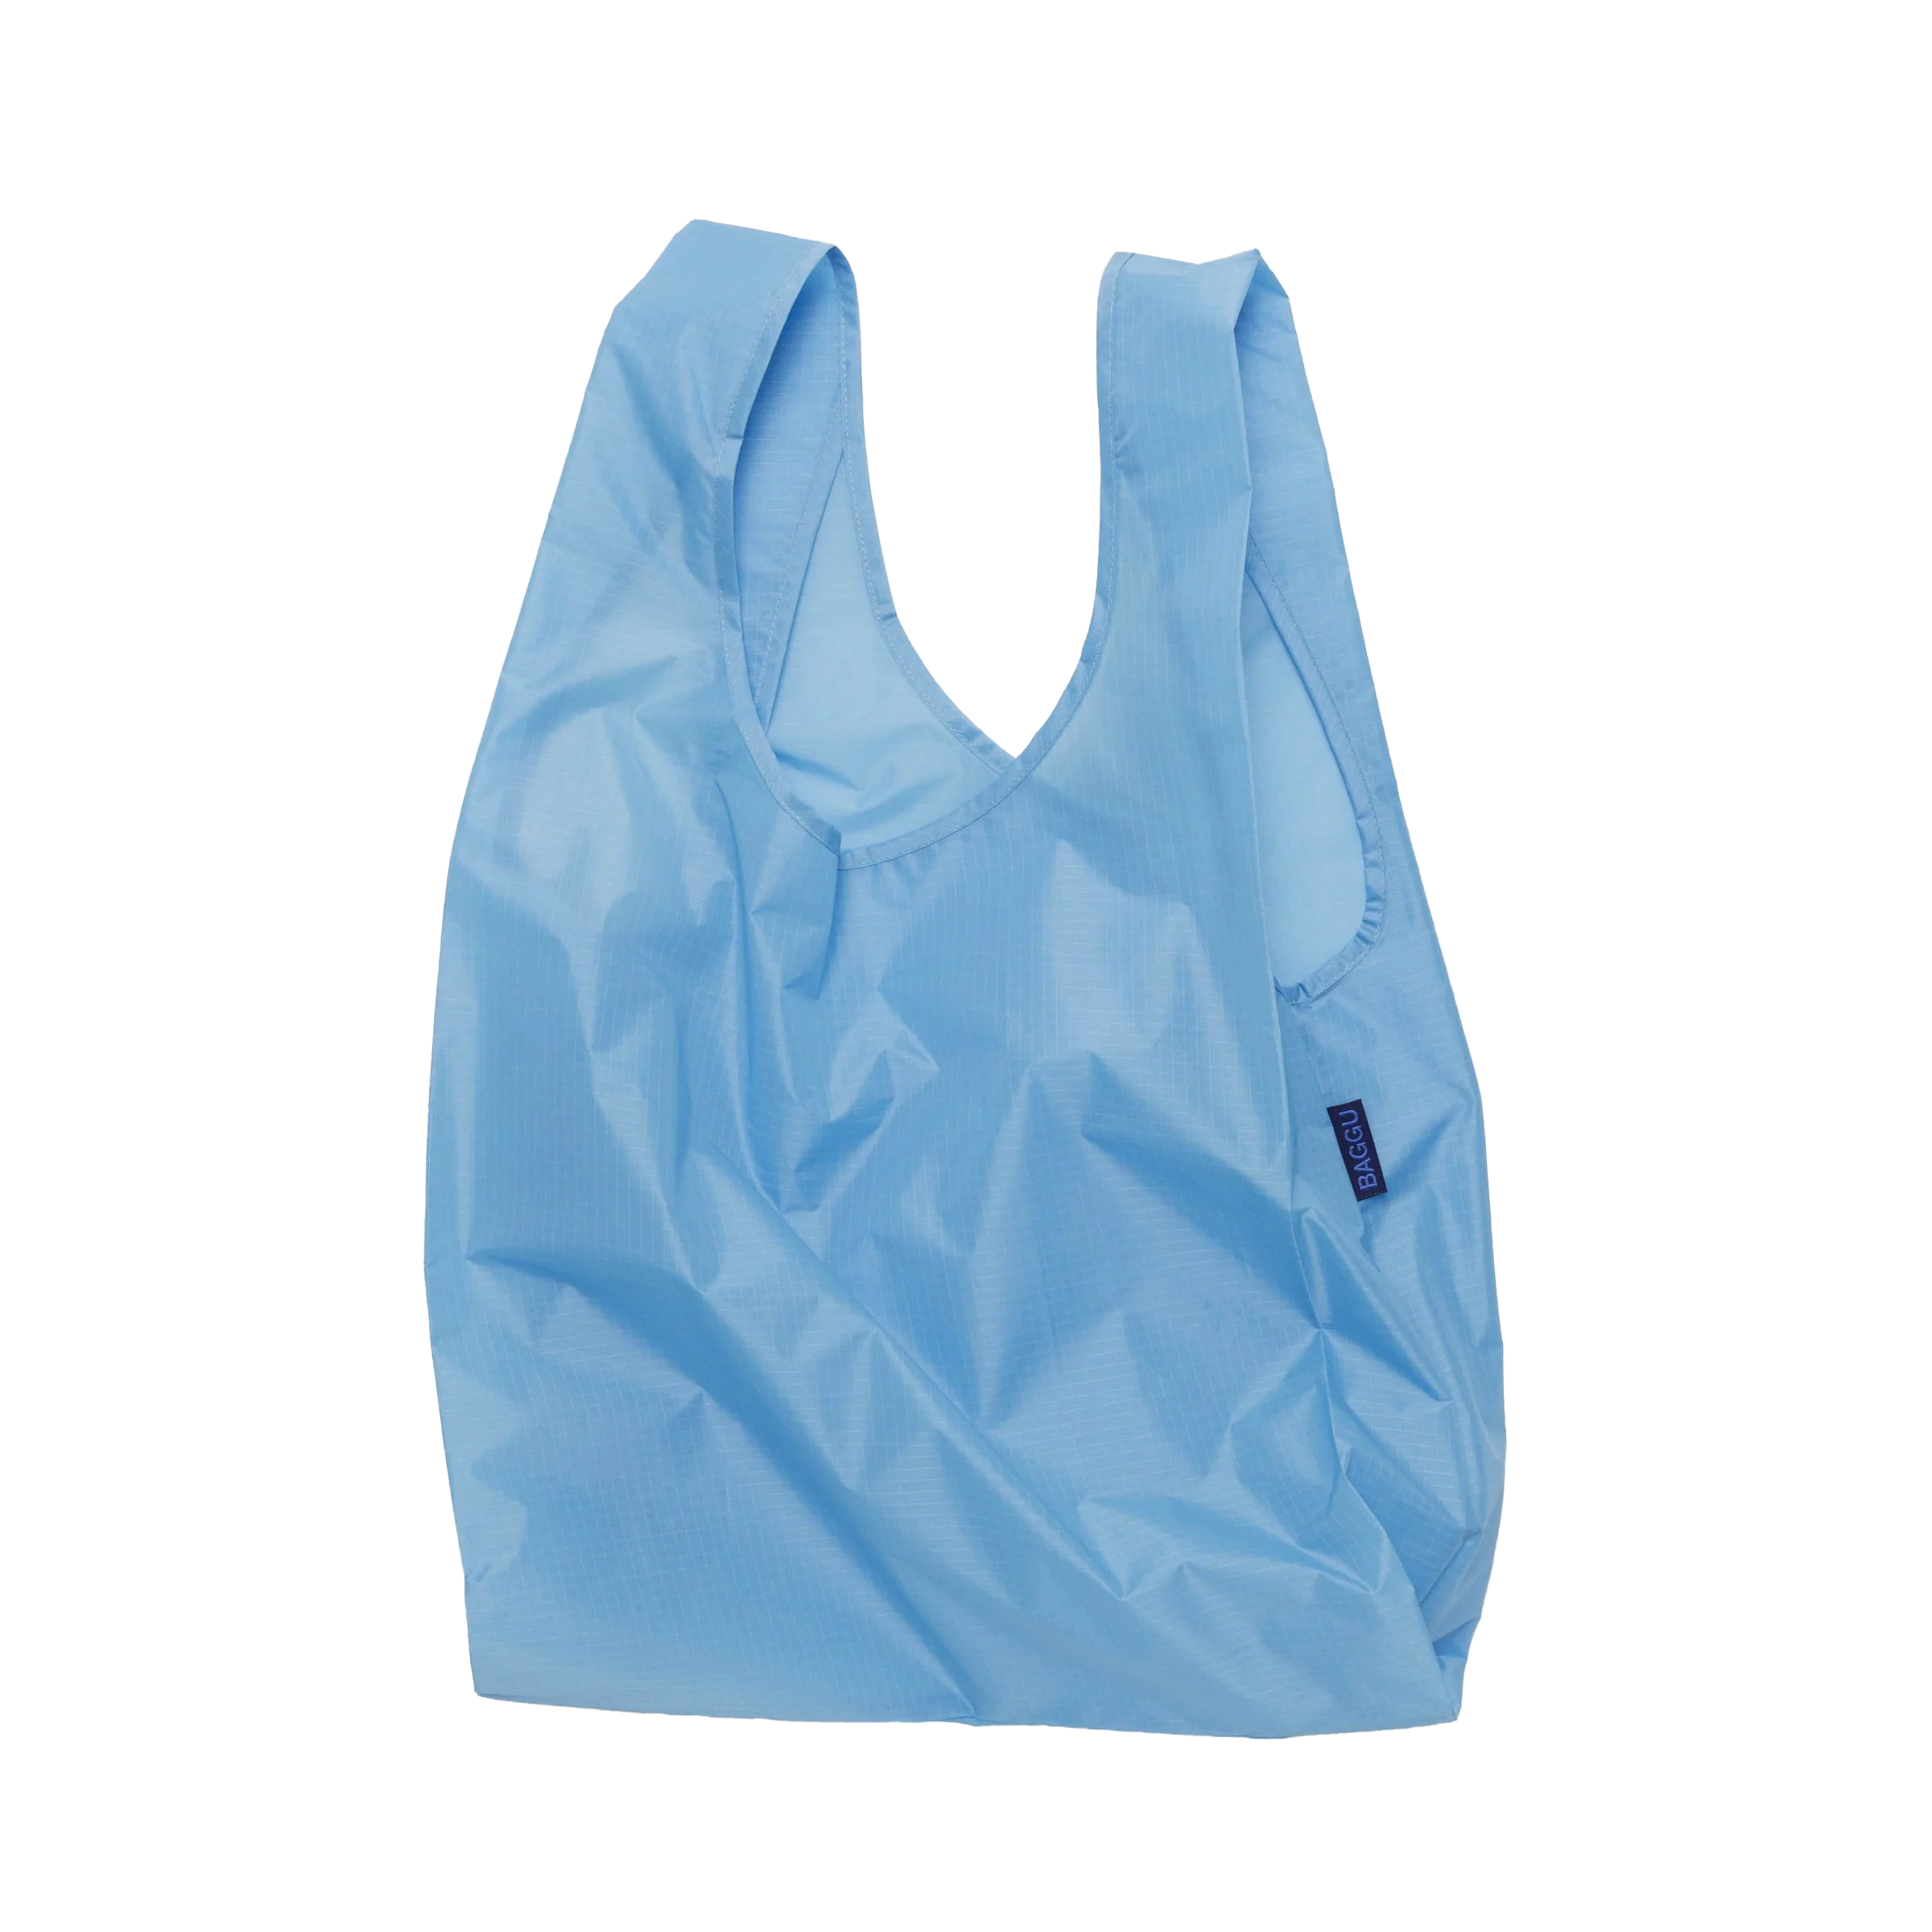 BAGGU Standard Bag - Amethyst